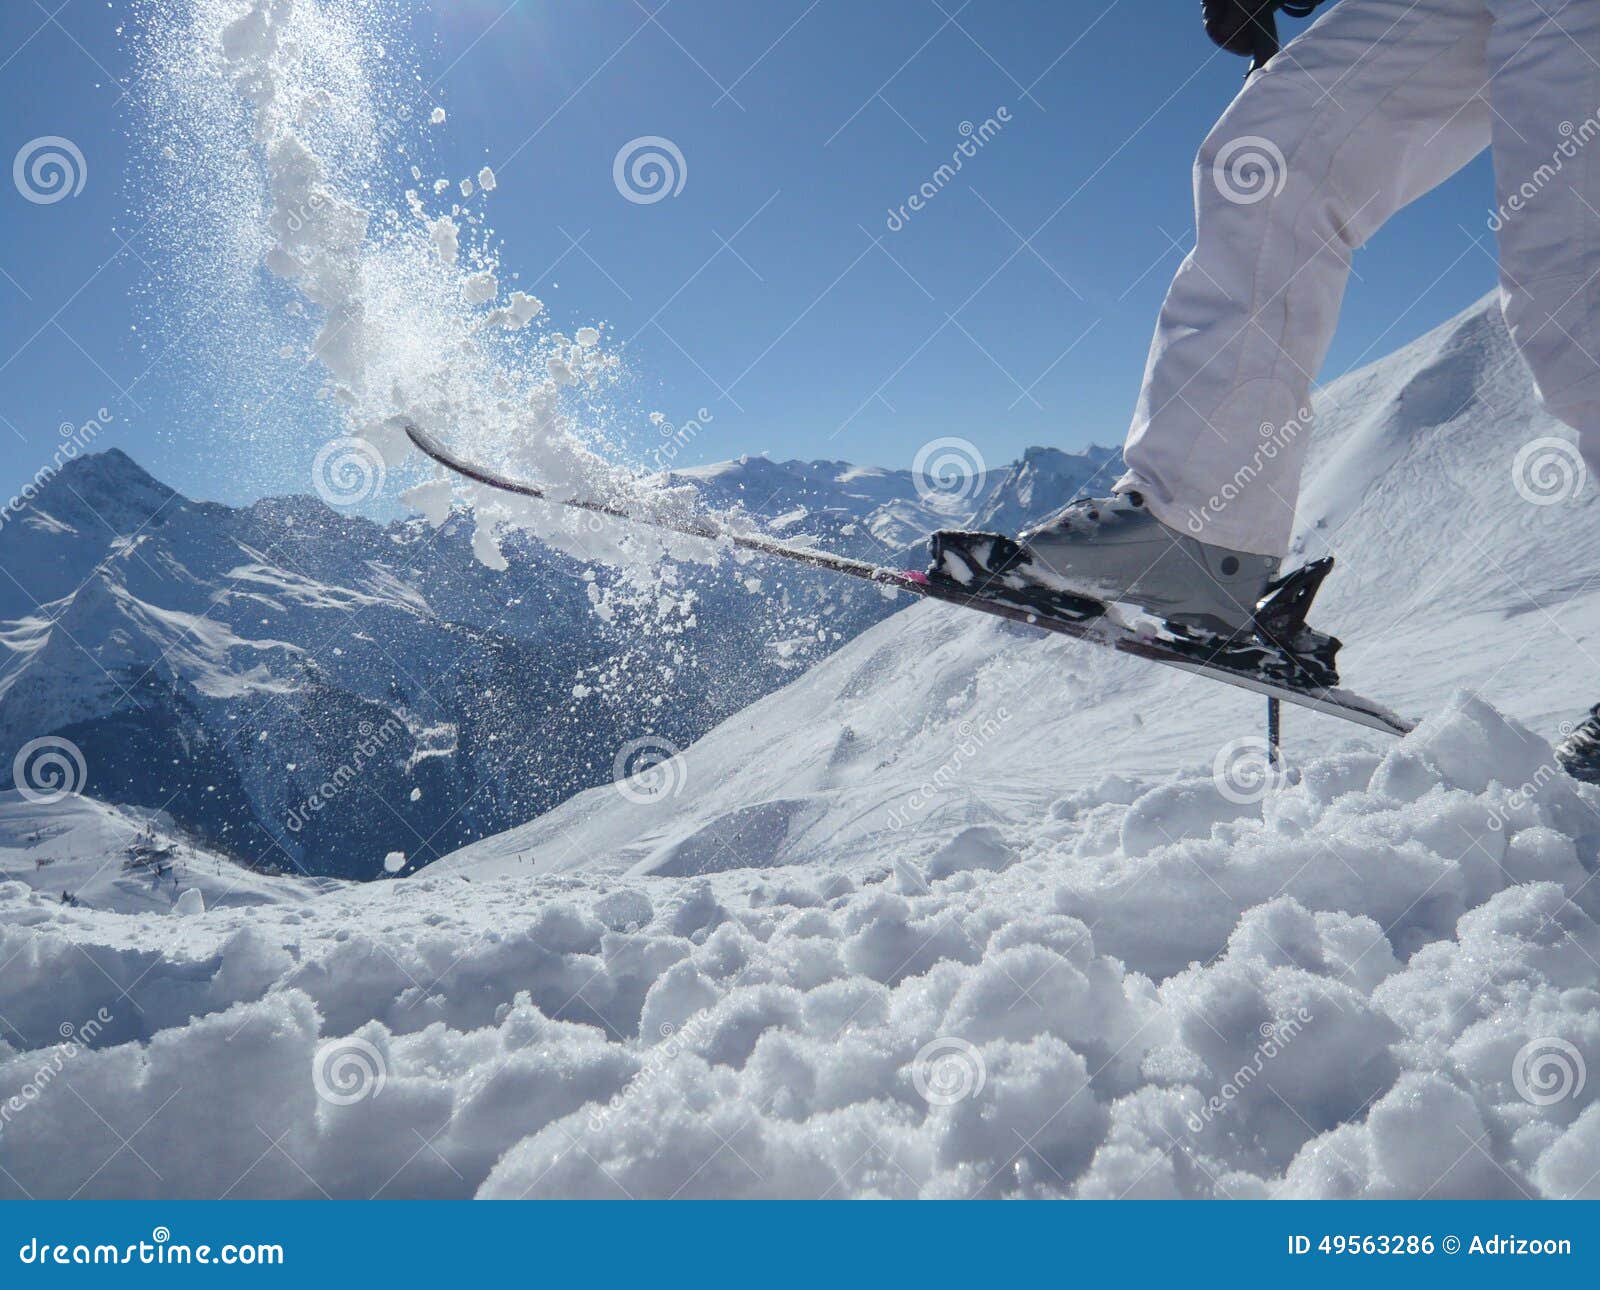 ski fun